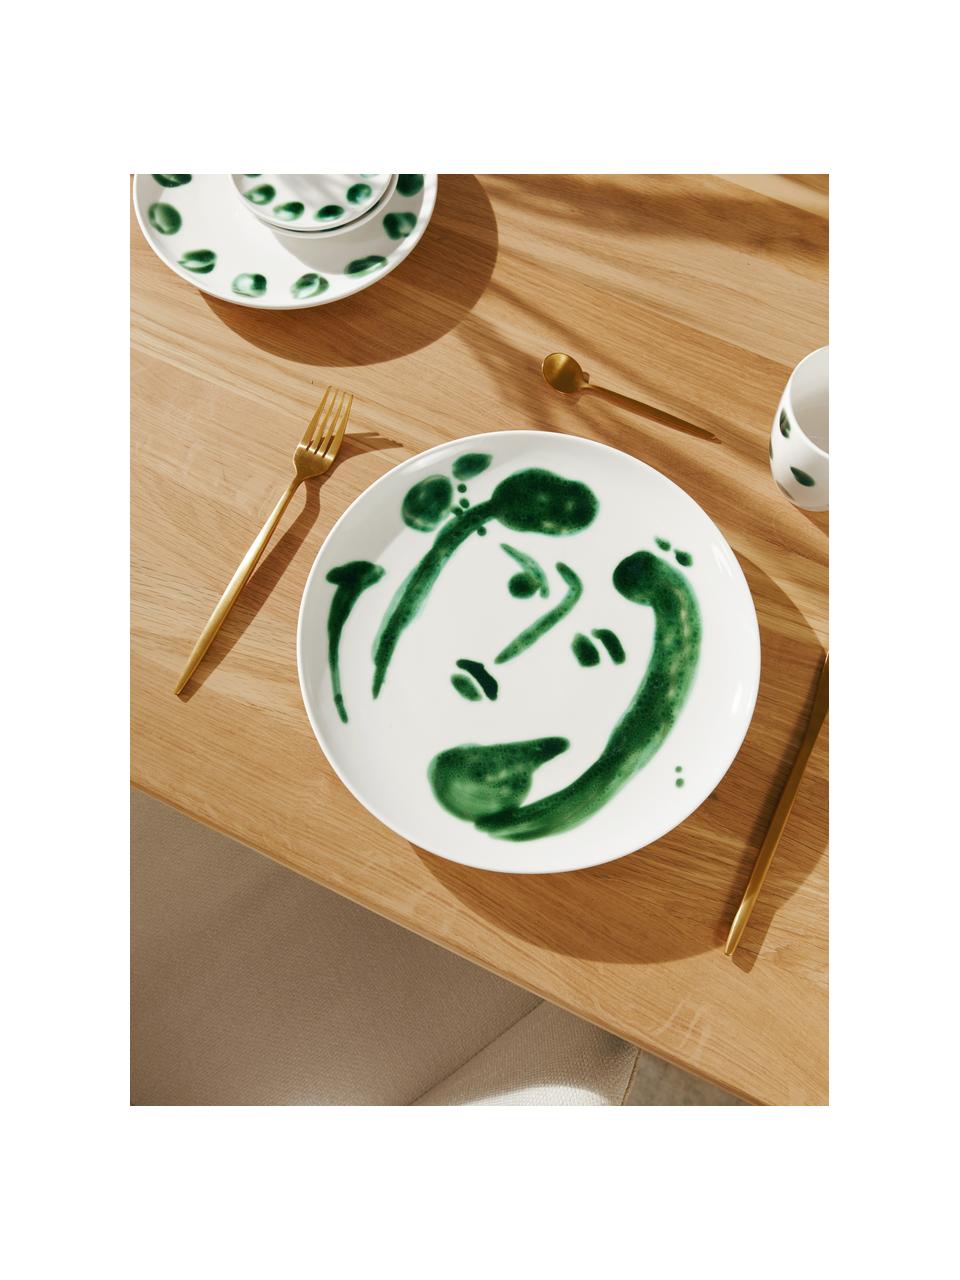 Ręcznie malowany talerz duży Sparks, Kamionka, Biały, zielony, Ø 28 cm